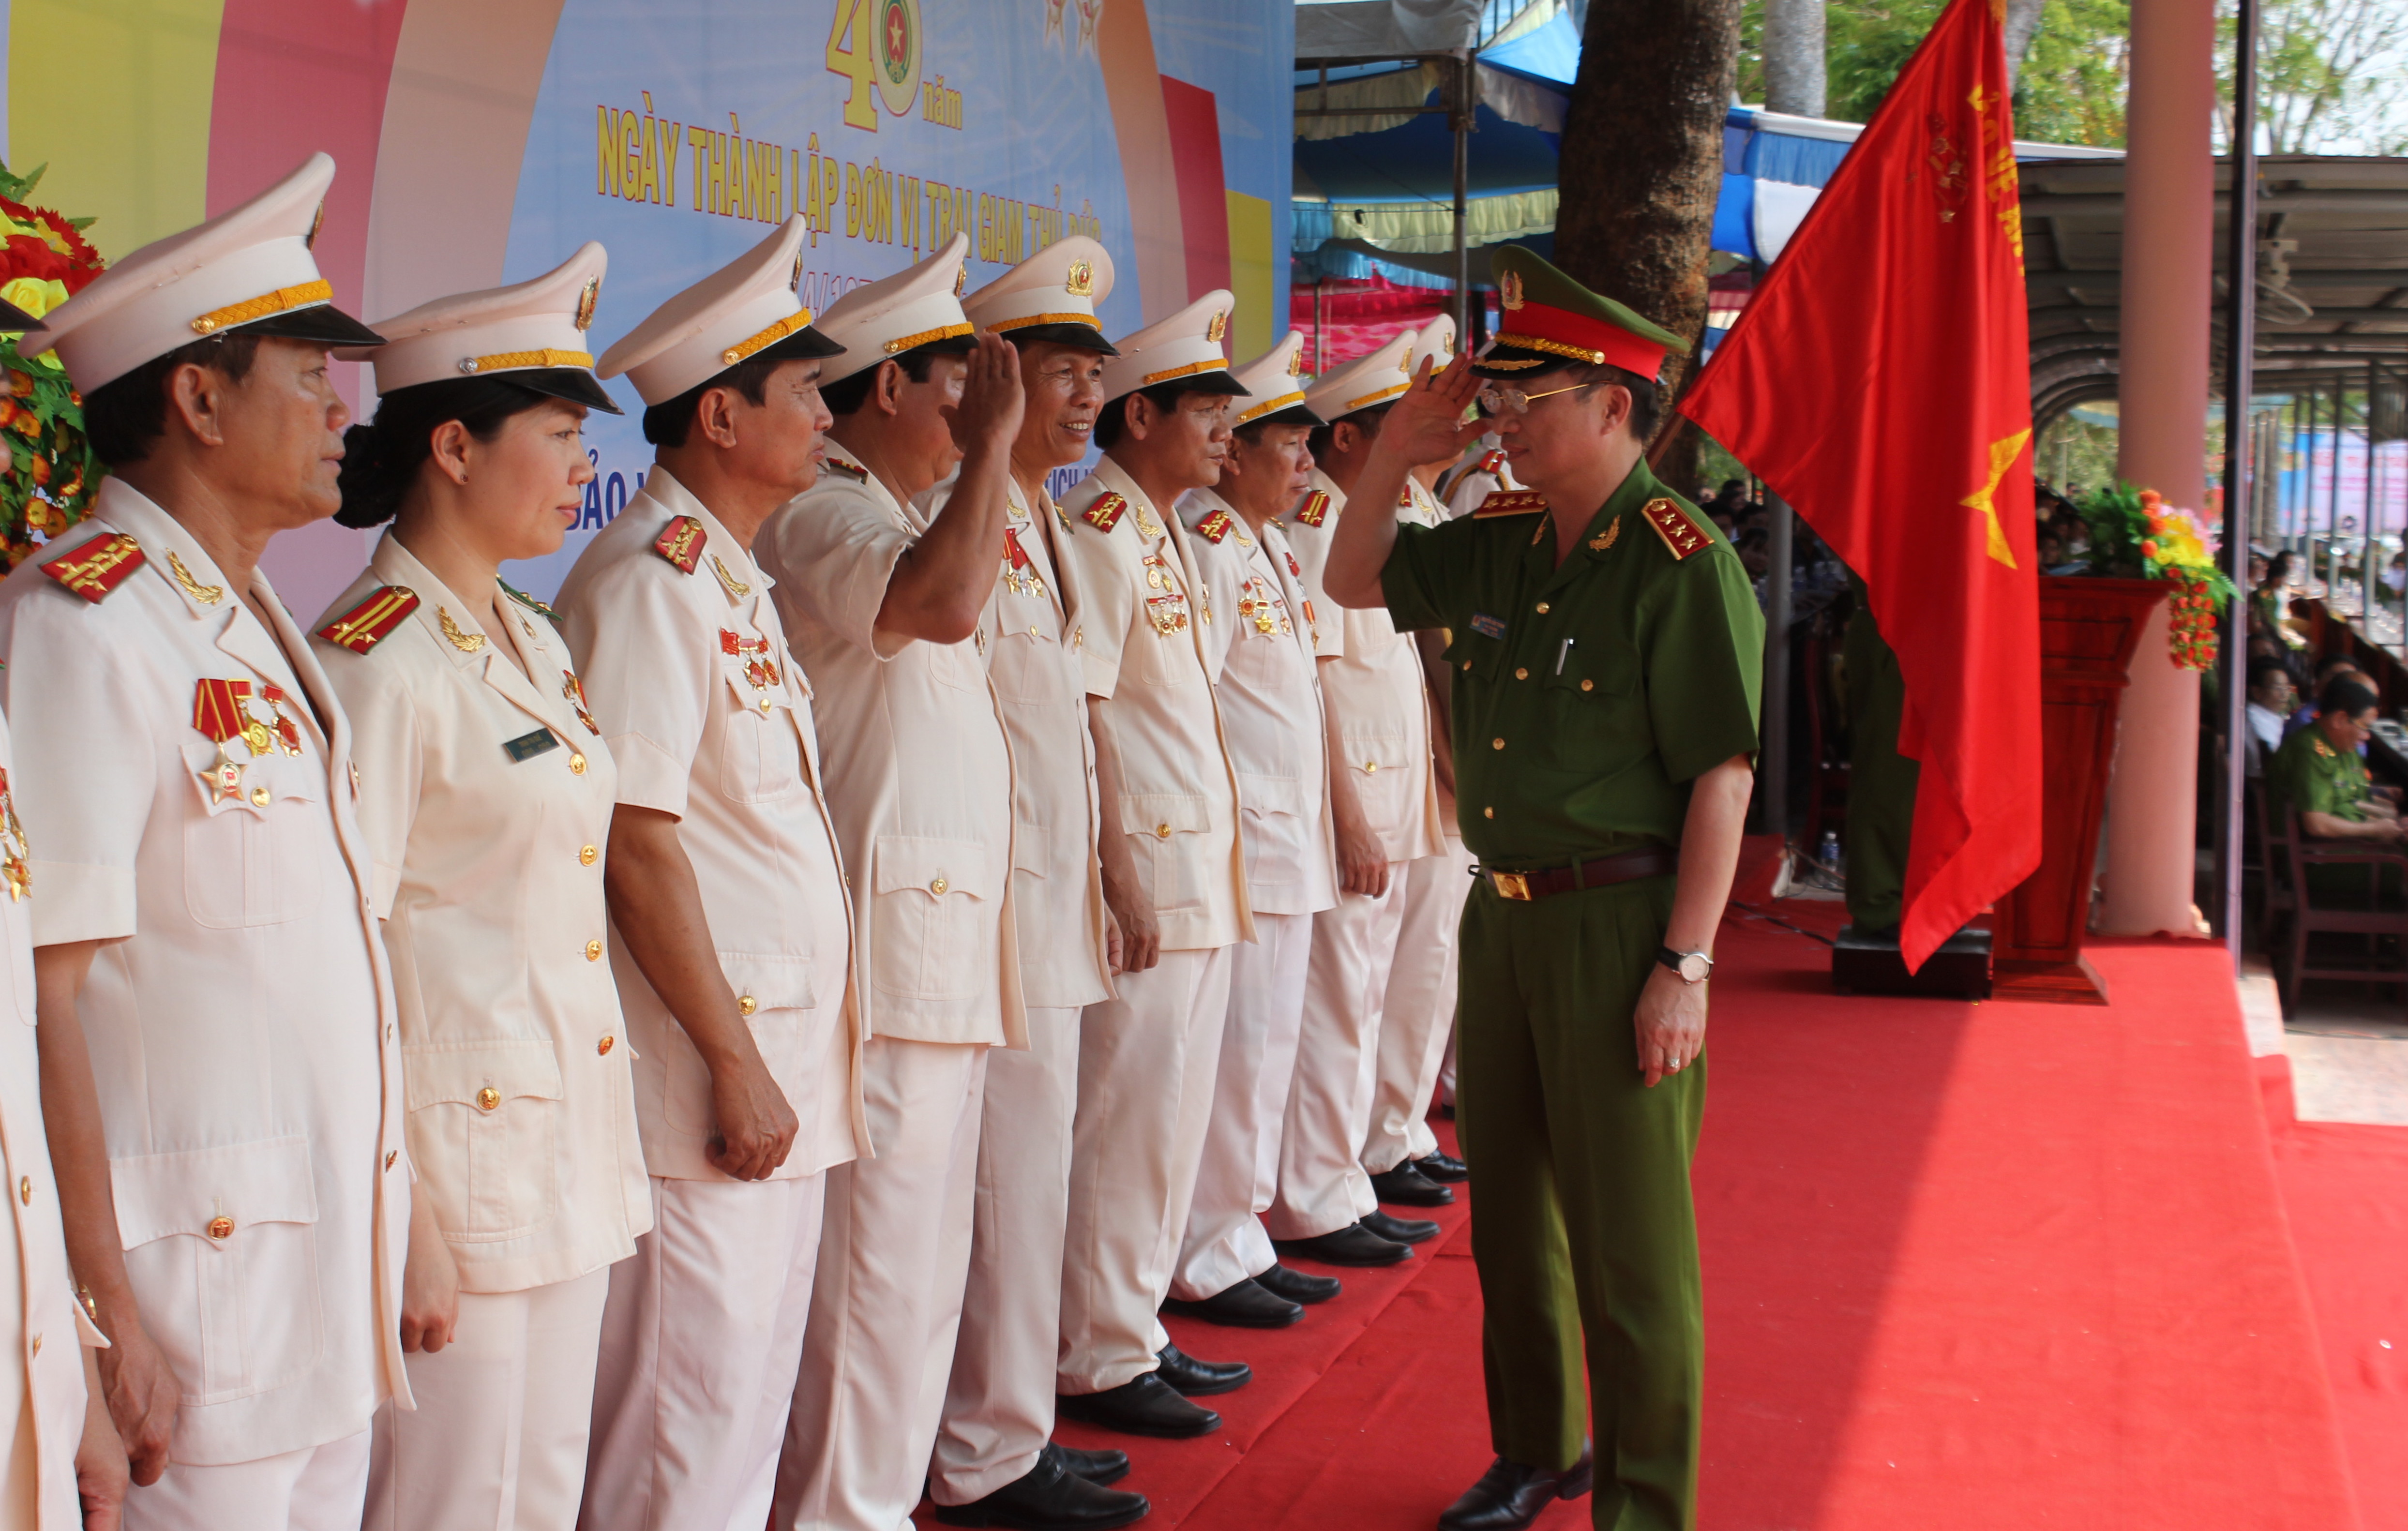 Thượng tướng Nguyễn Văn Thành, thứ trưởng Bộ Công an trao Huân chương bảo vệ Tổ quốc hạng Nhất và bằng khen cho tập thể cán bộ của Trại giam Thủ Đức - Ảnh: Phạm Hữu